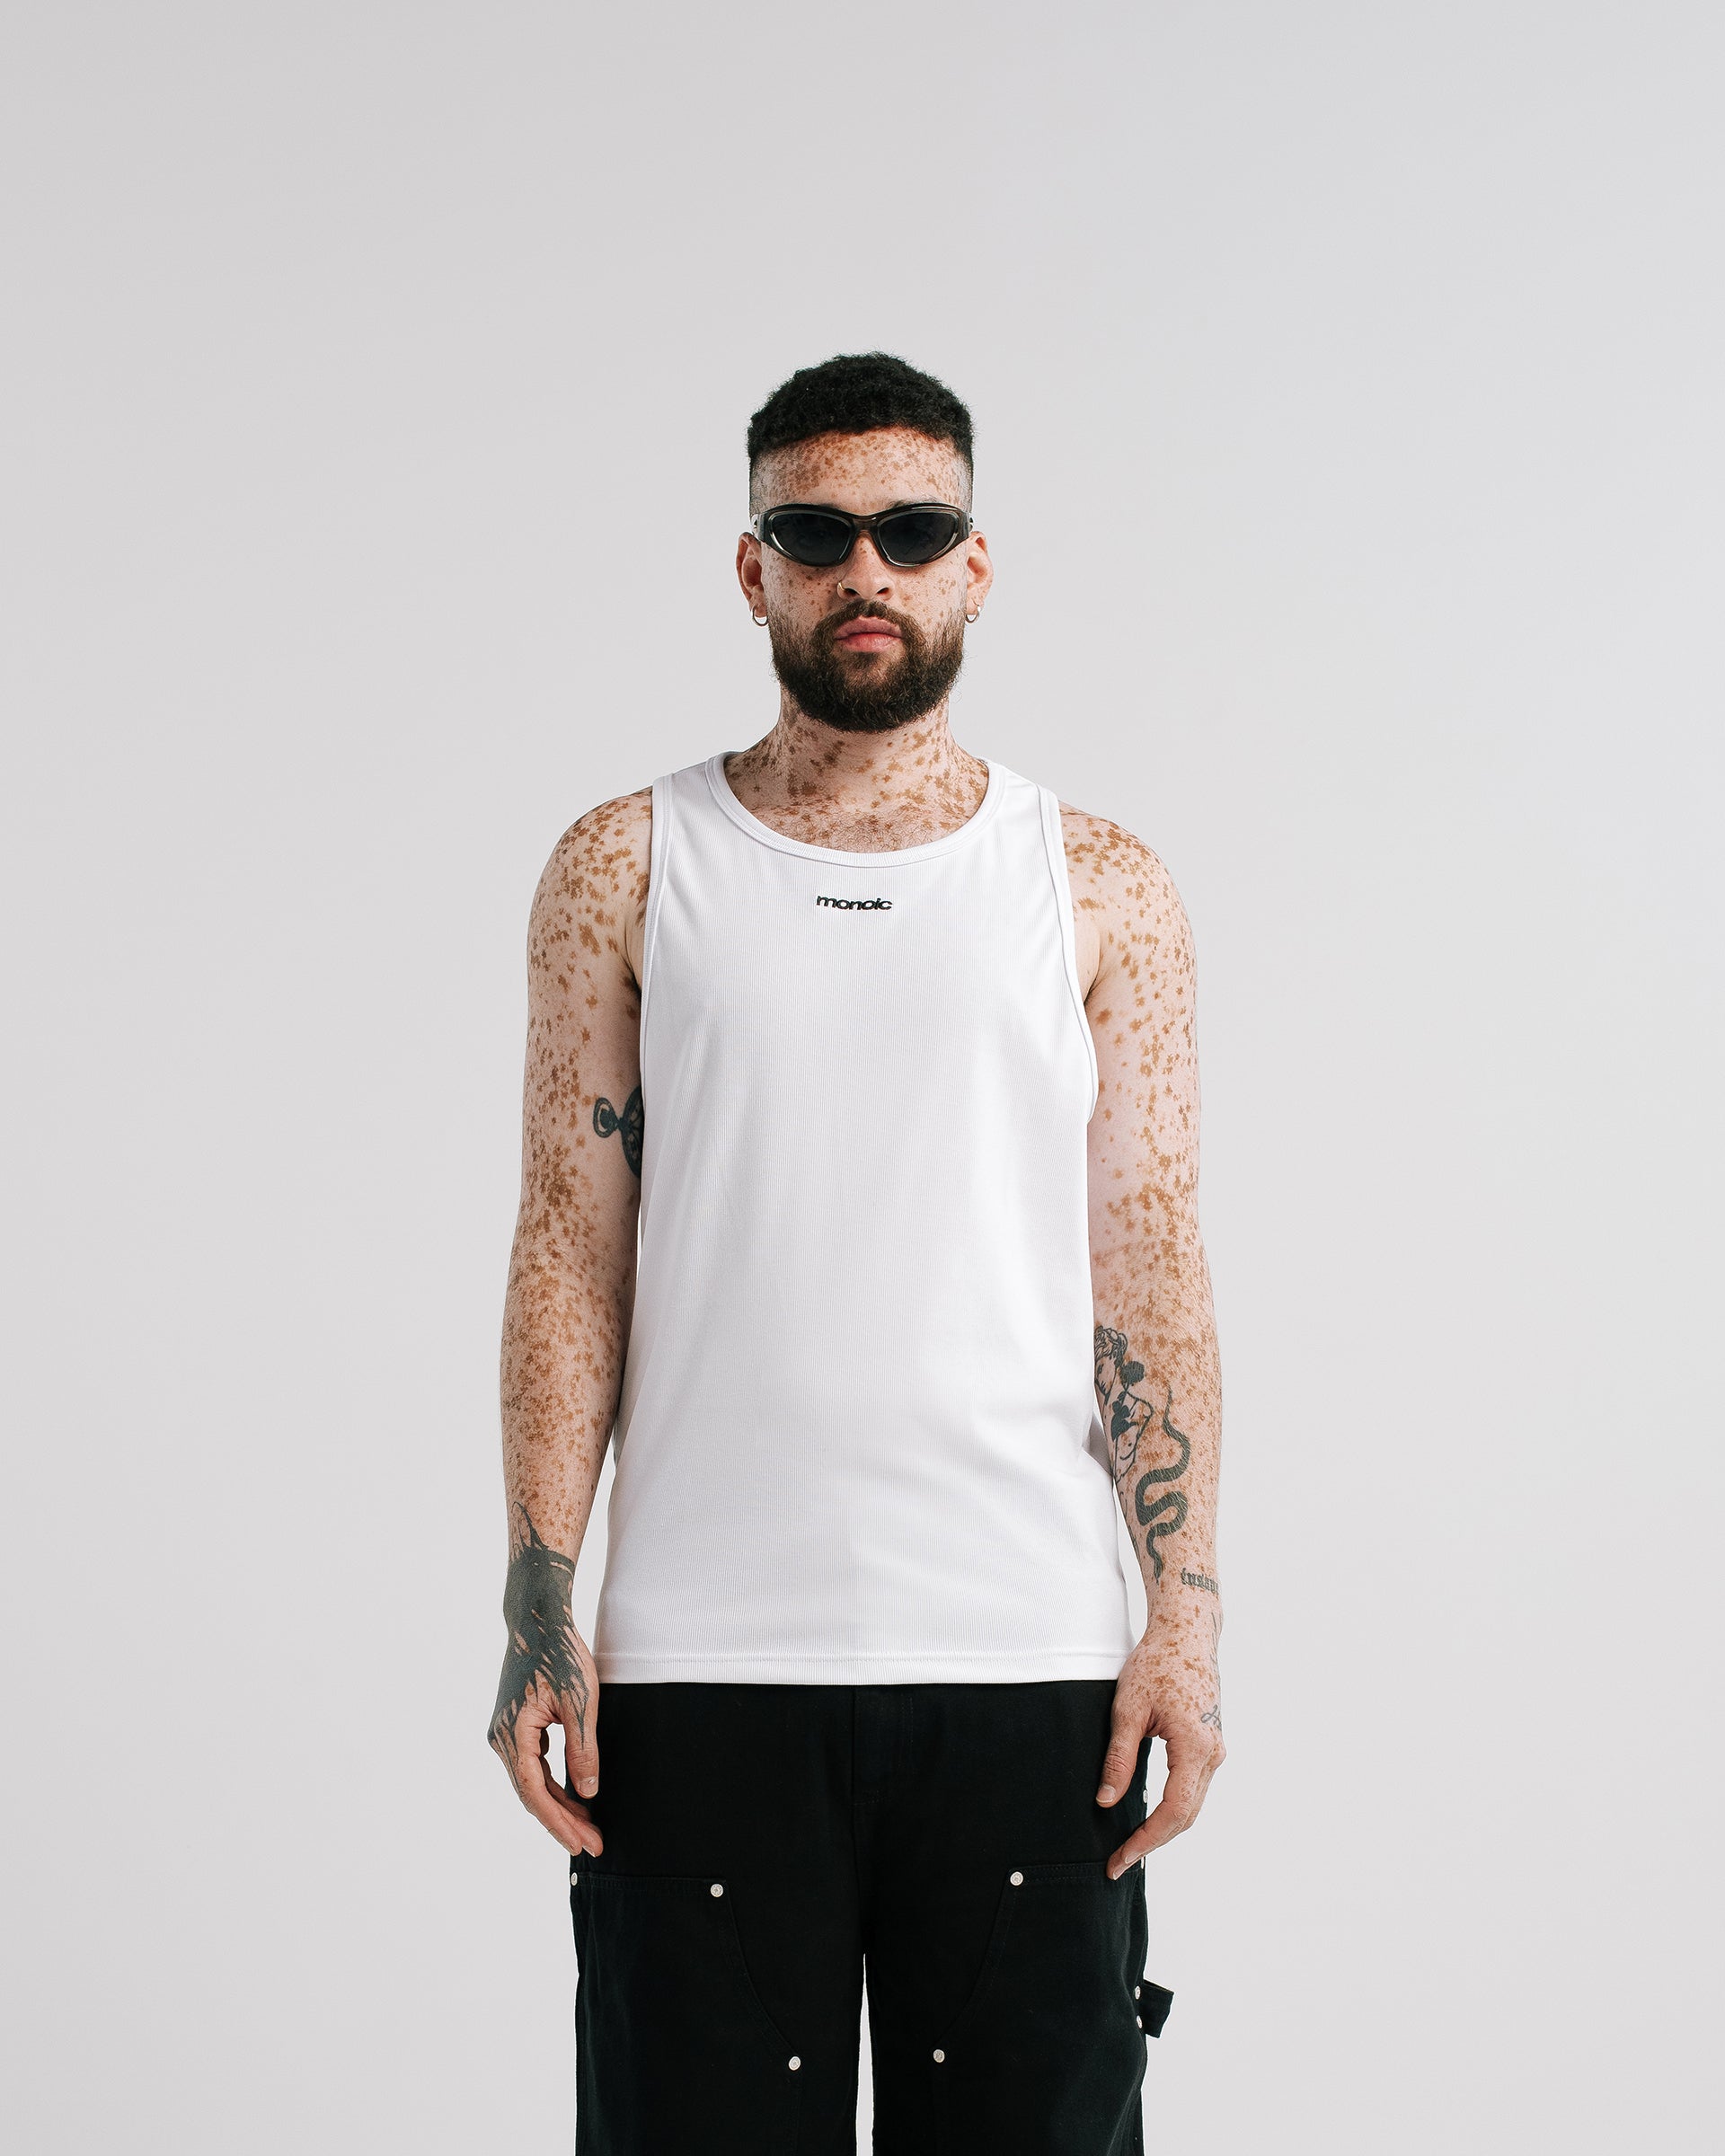 Camiseta Tank Top Blanco | Camisetas Endless Dreams | Monoic Studios